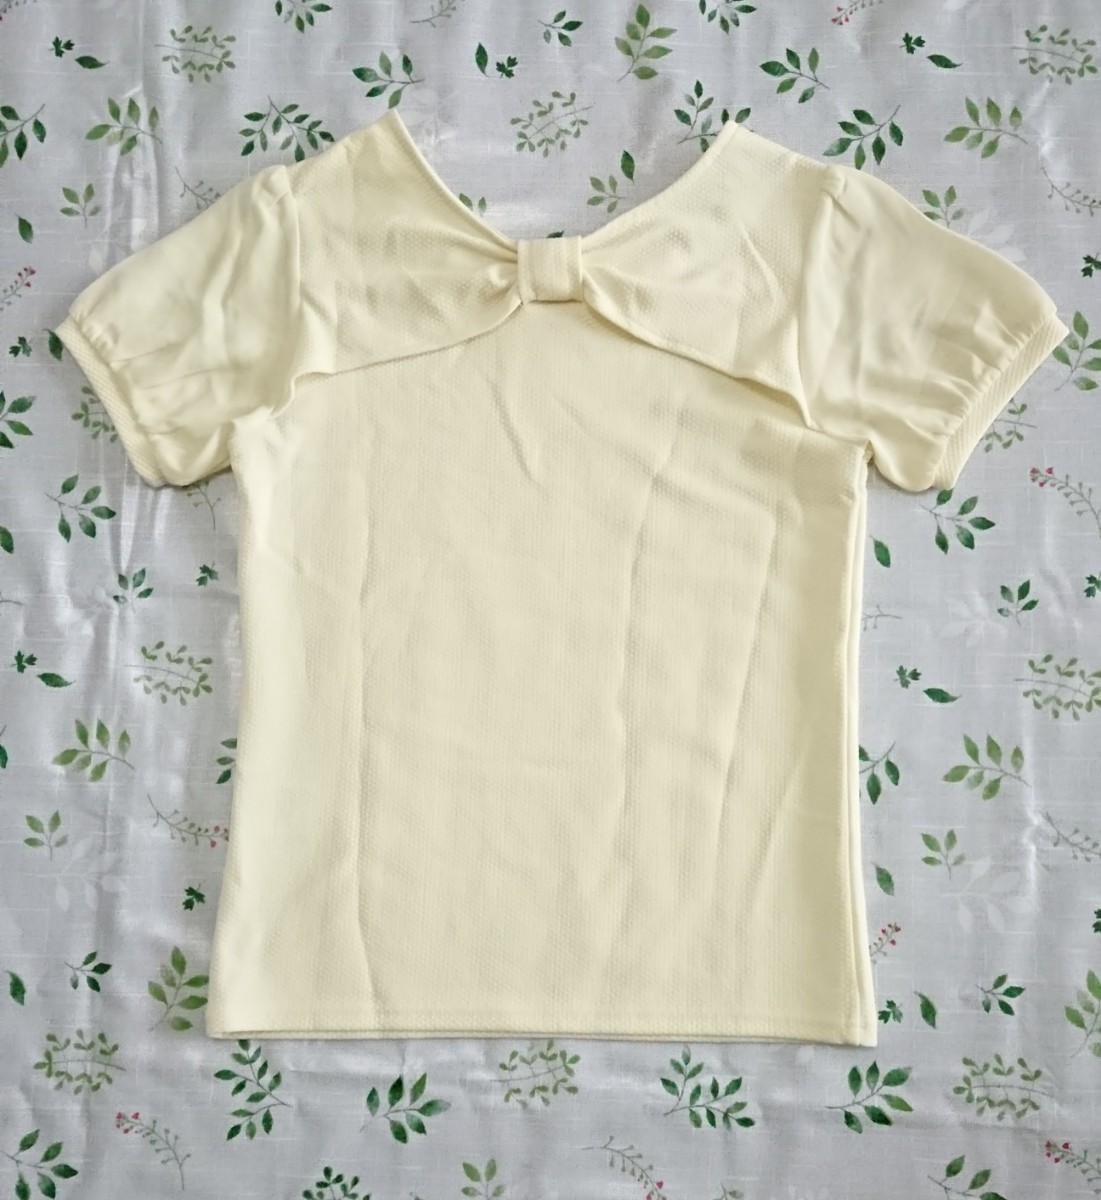 レディース Tシャツ カットソー 半袖 バックリボン ビジュー イエロー シアー Mサイズ